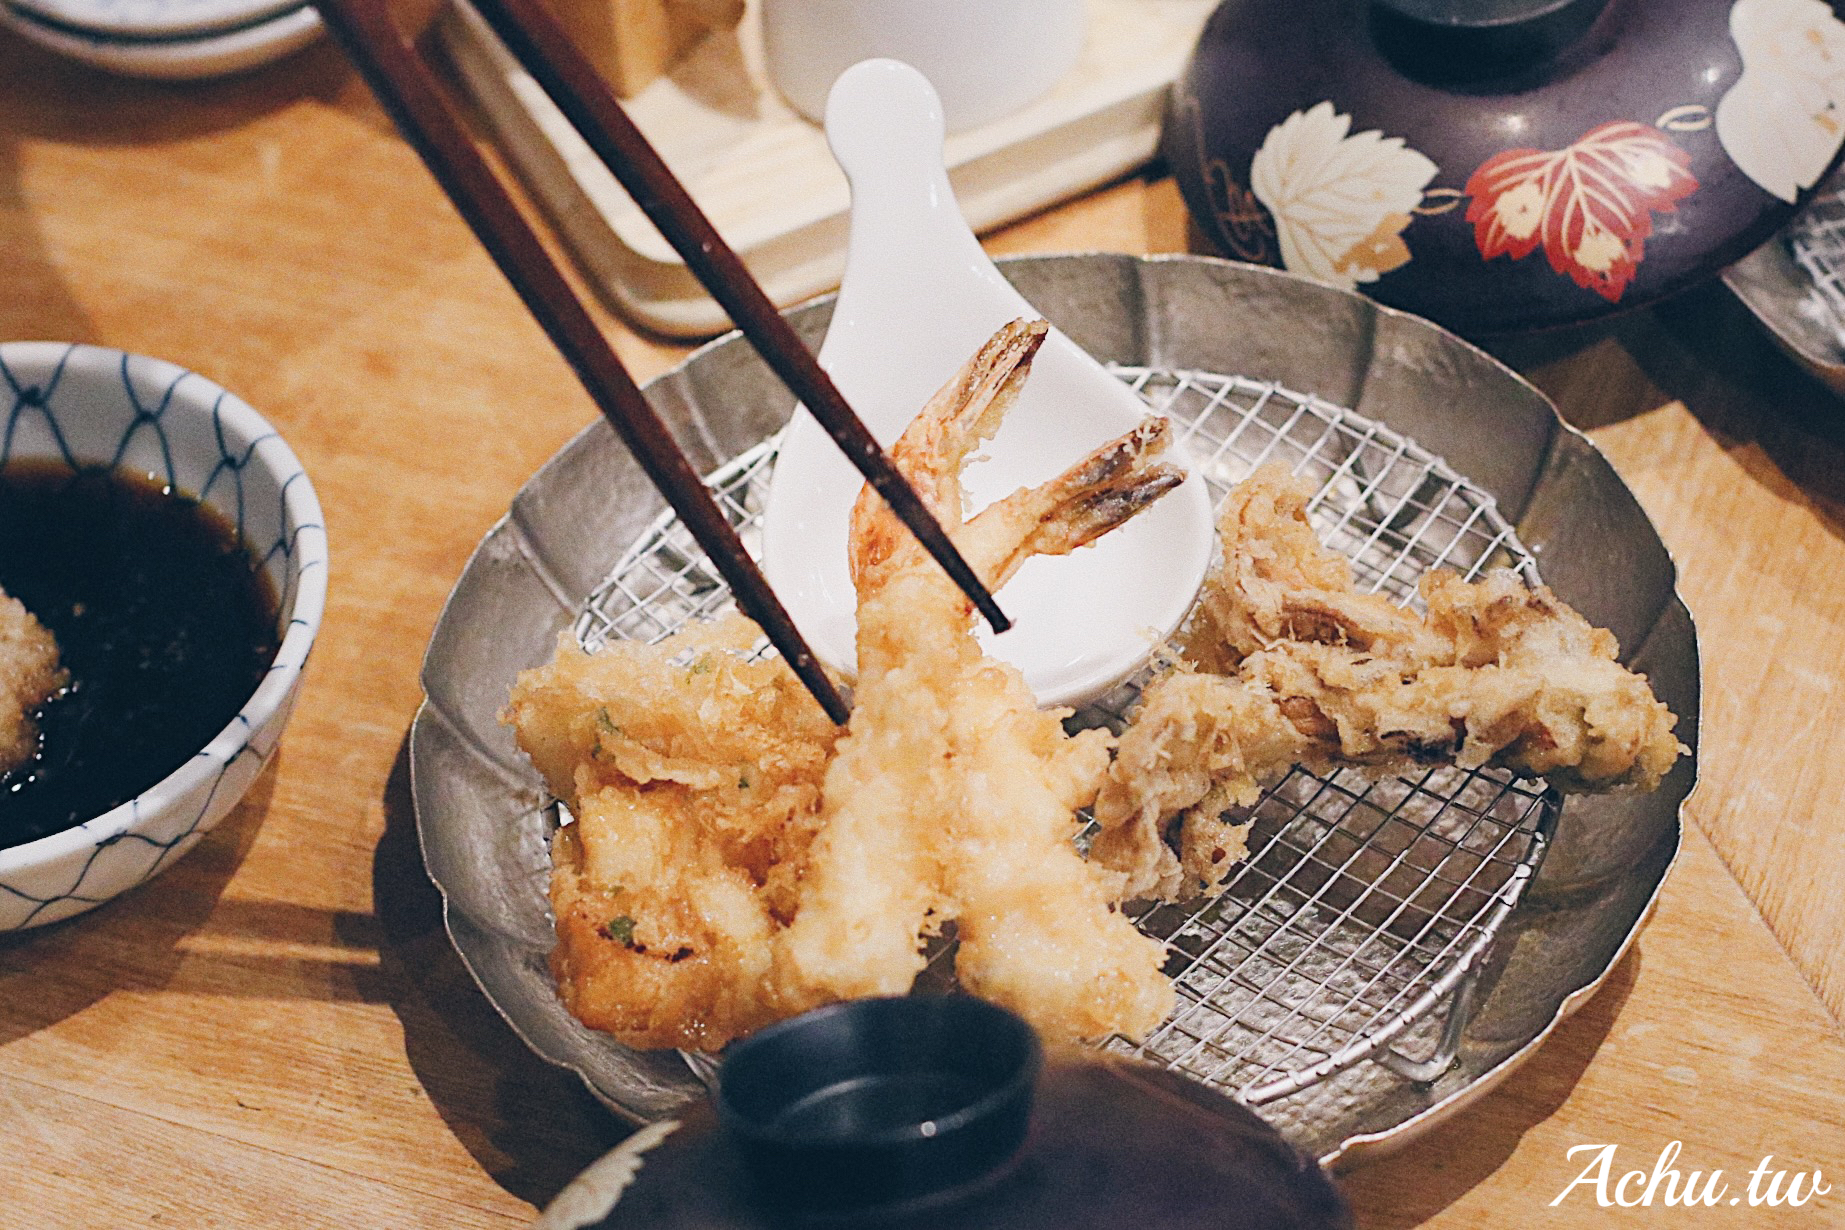 即時熱門文章：【東京美食】金子半之助 天婦羅炸蝦個人套餐 到東京必吃的愛店之一 (菜單)